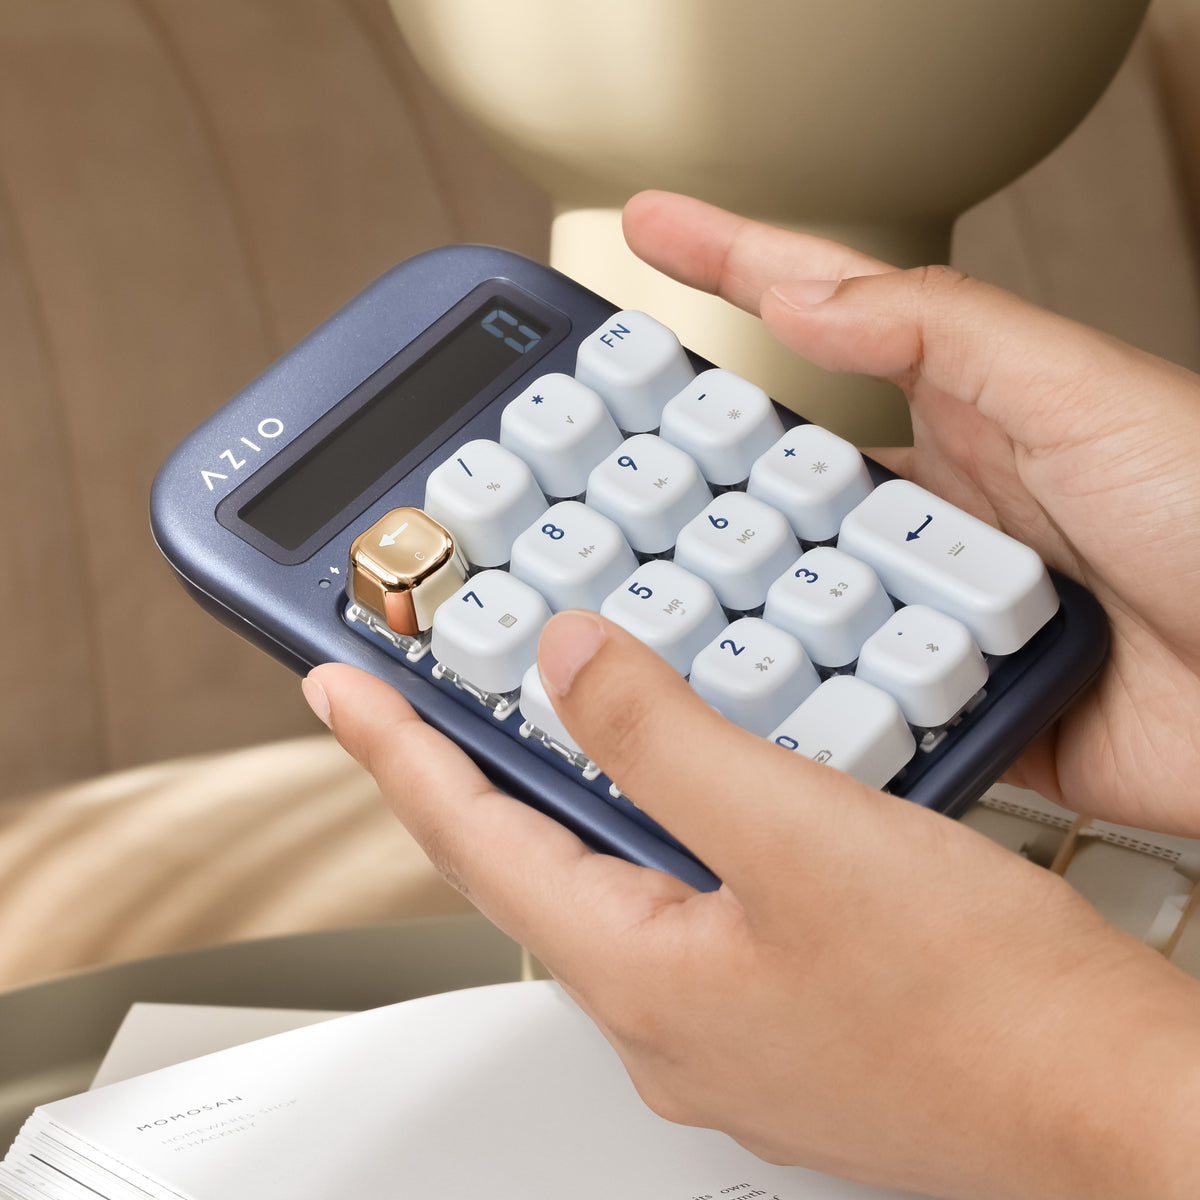 Izo numpad / الآلة الحاسبة (المفتاح الأزرق)